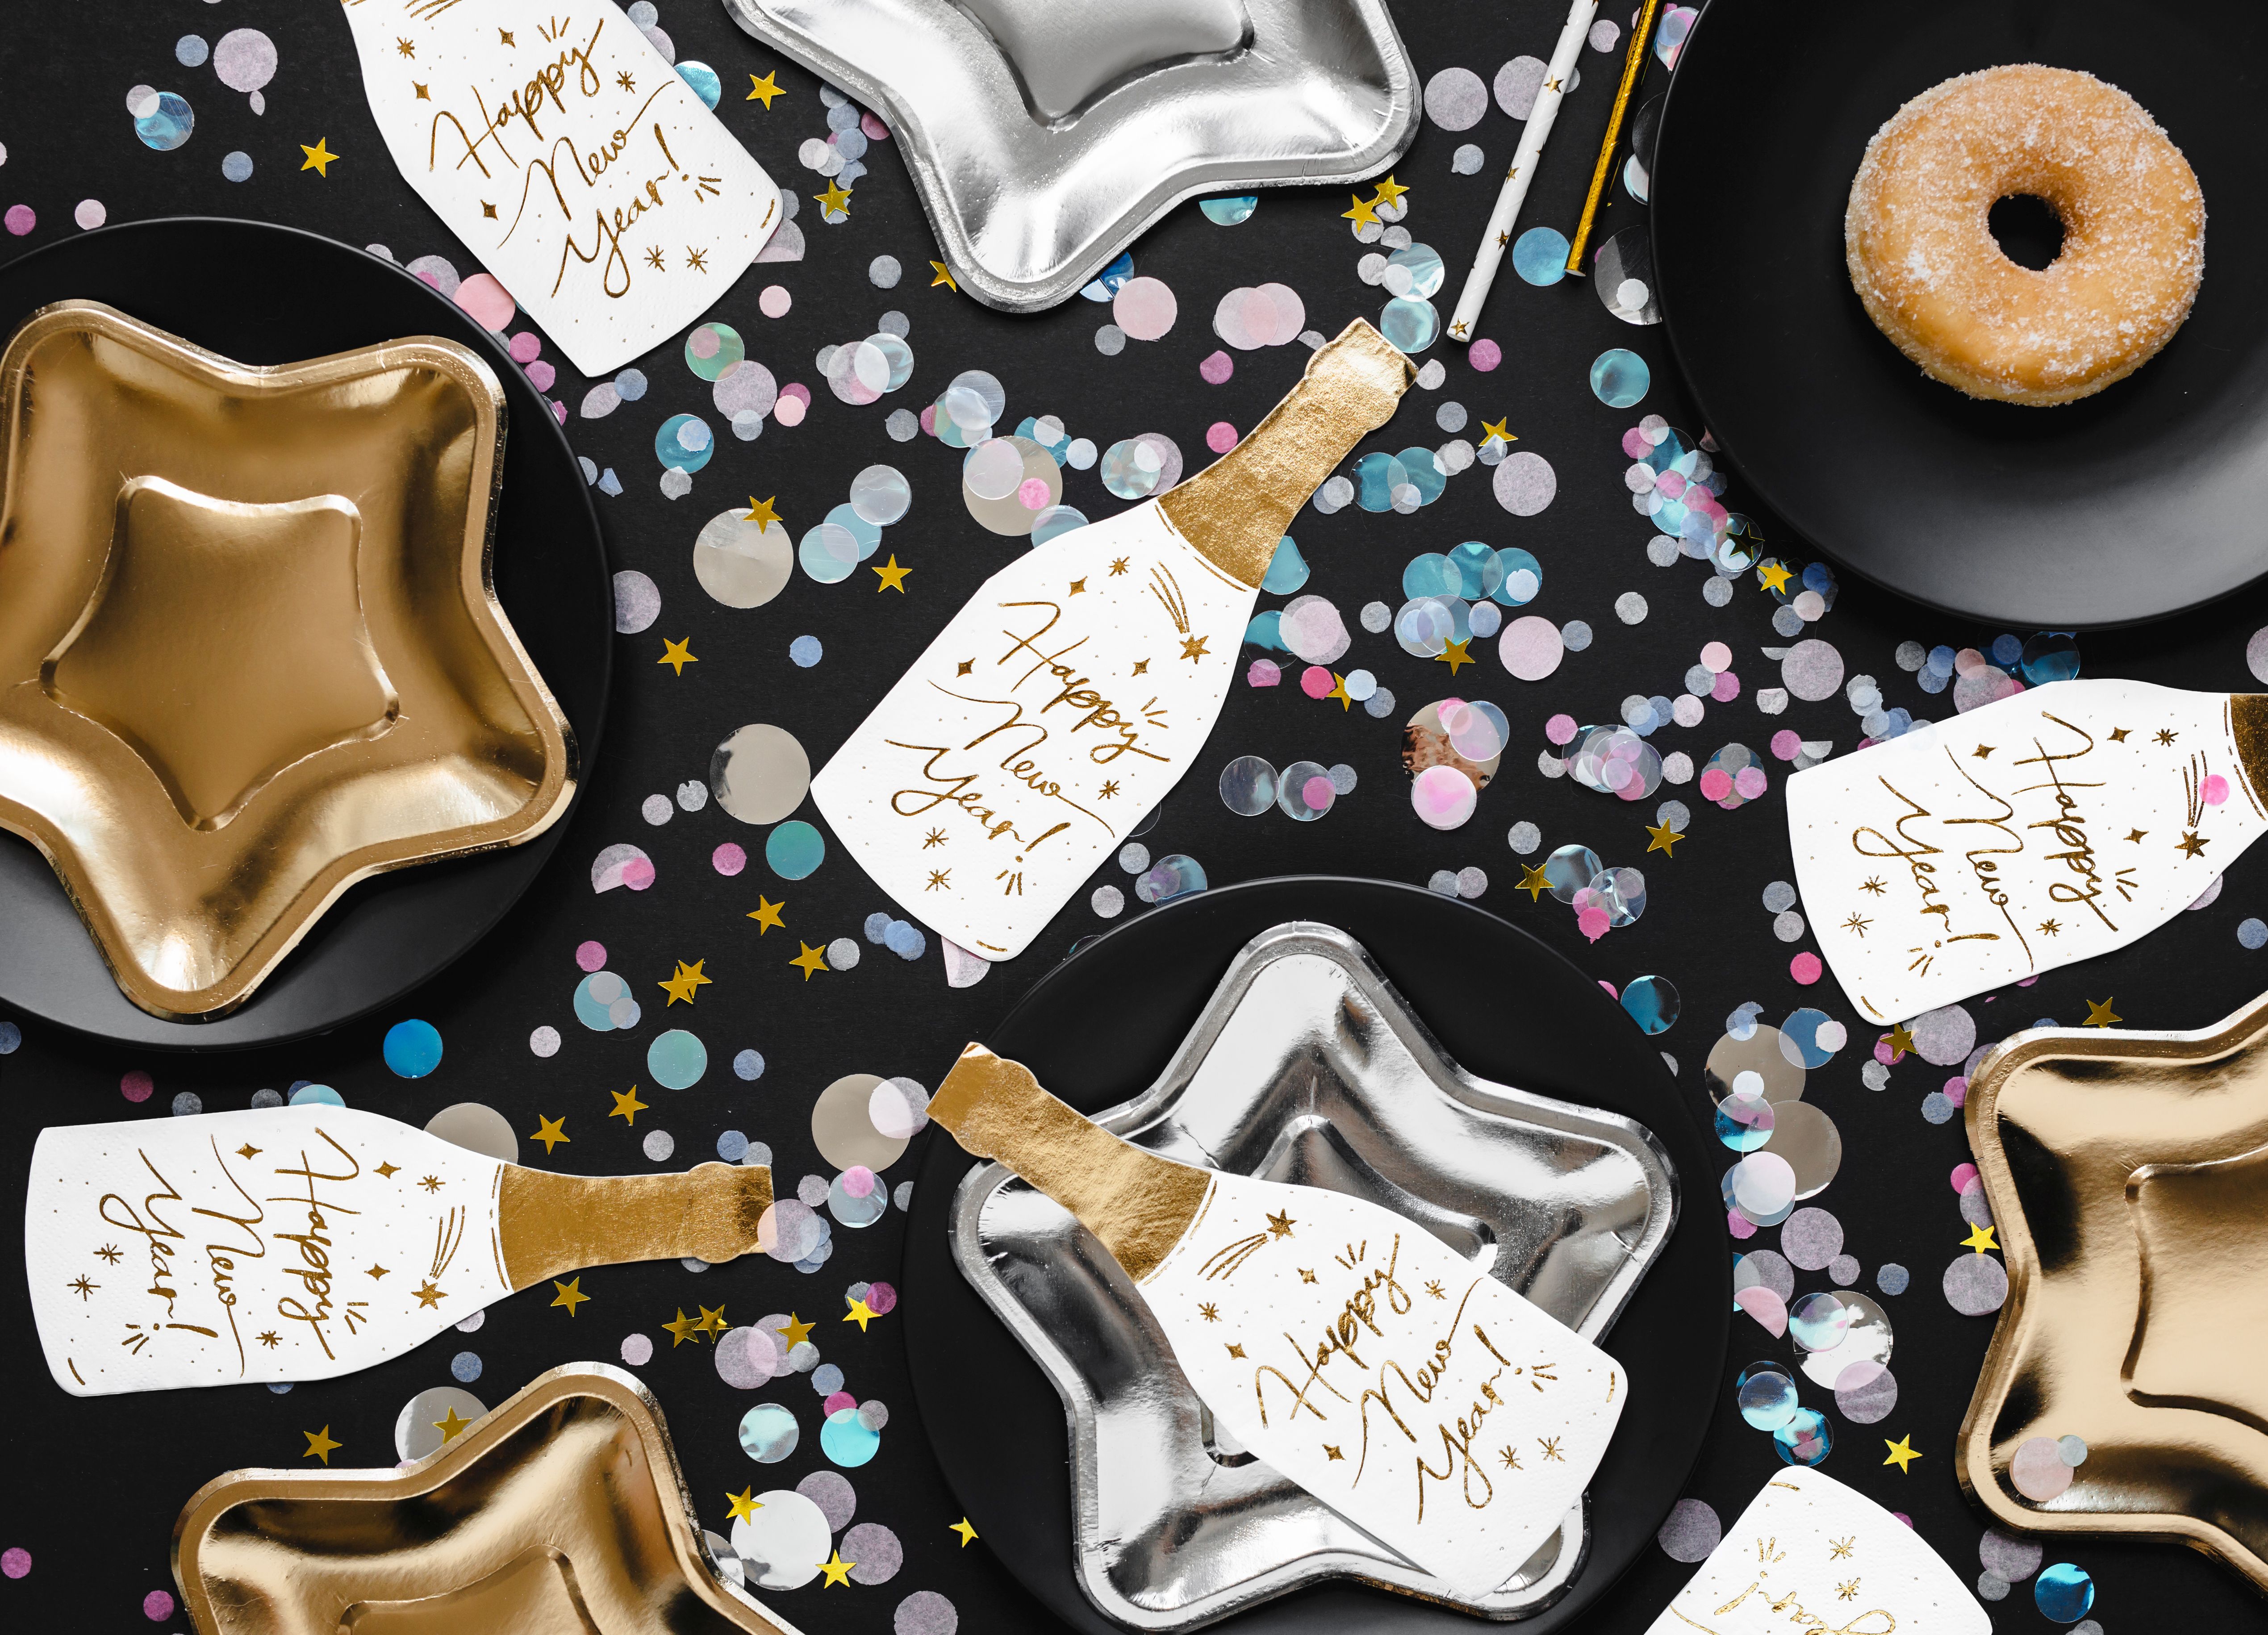 20 Servietten - "Happy New Year" Champagnerflasche